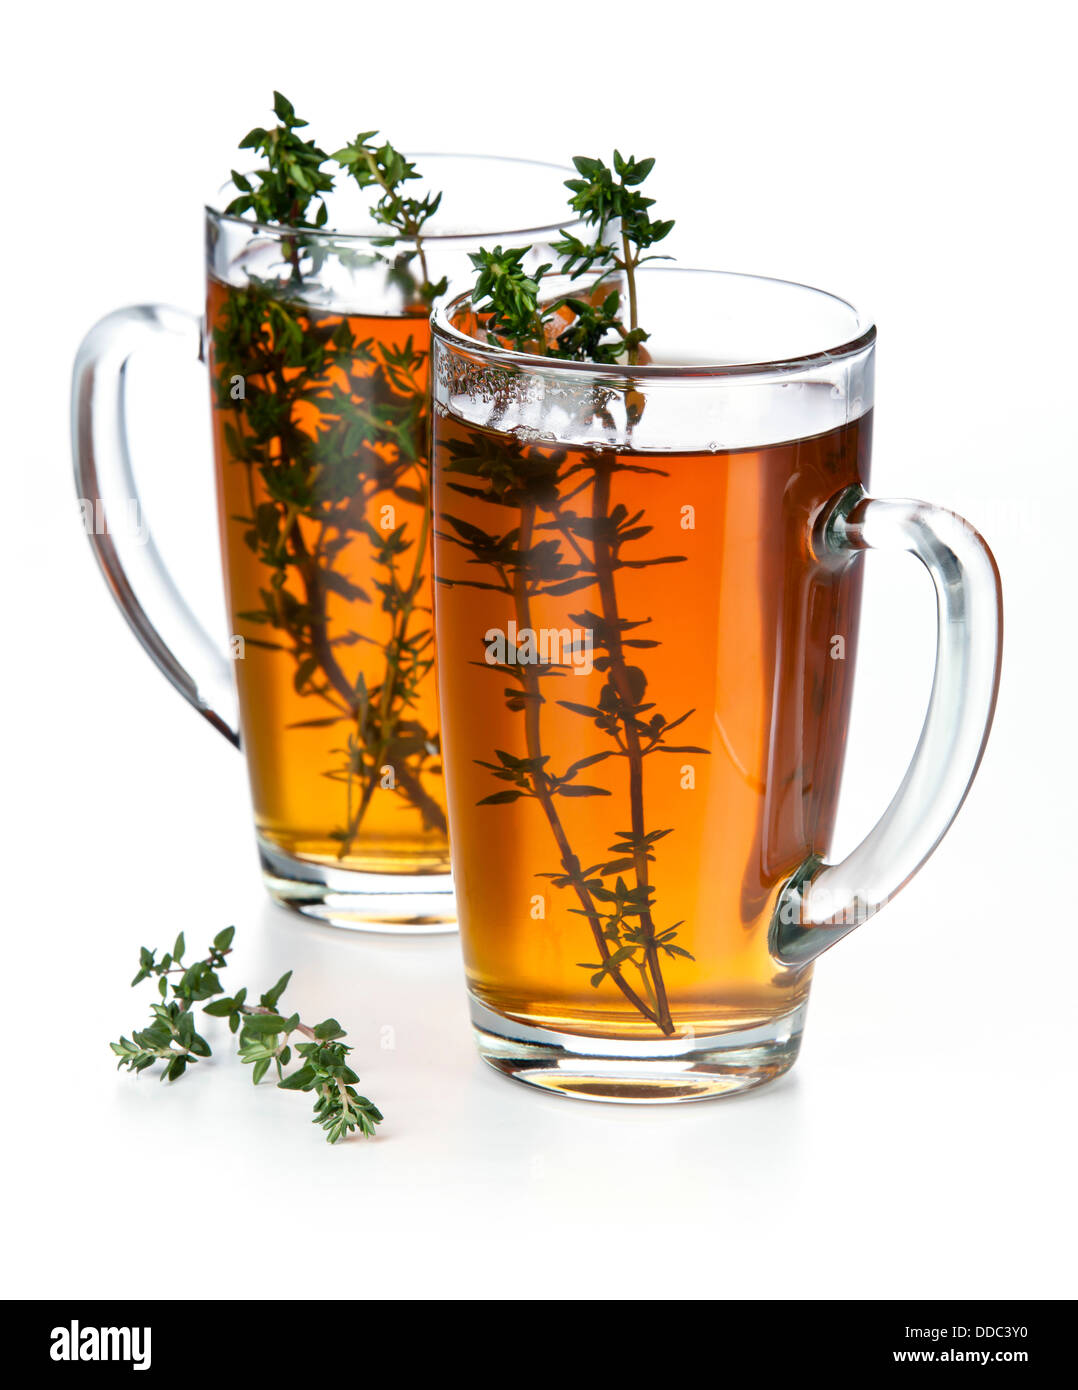 Tea thymus on white background Stock Photo